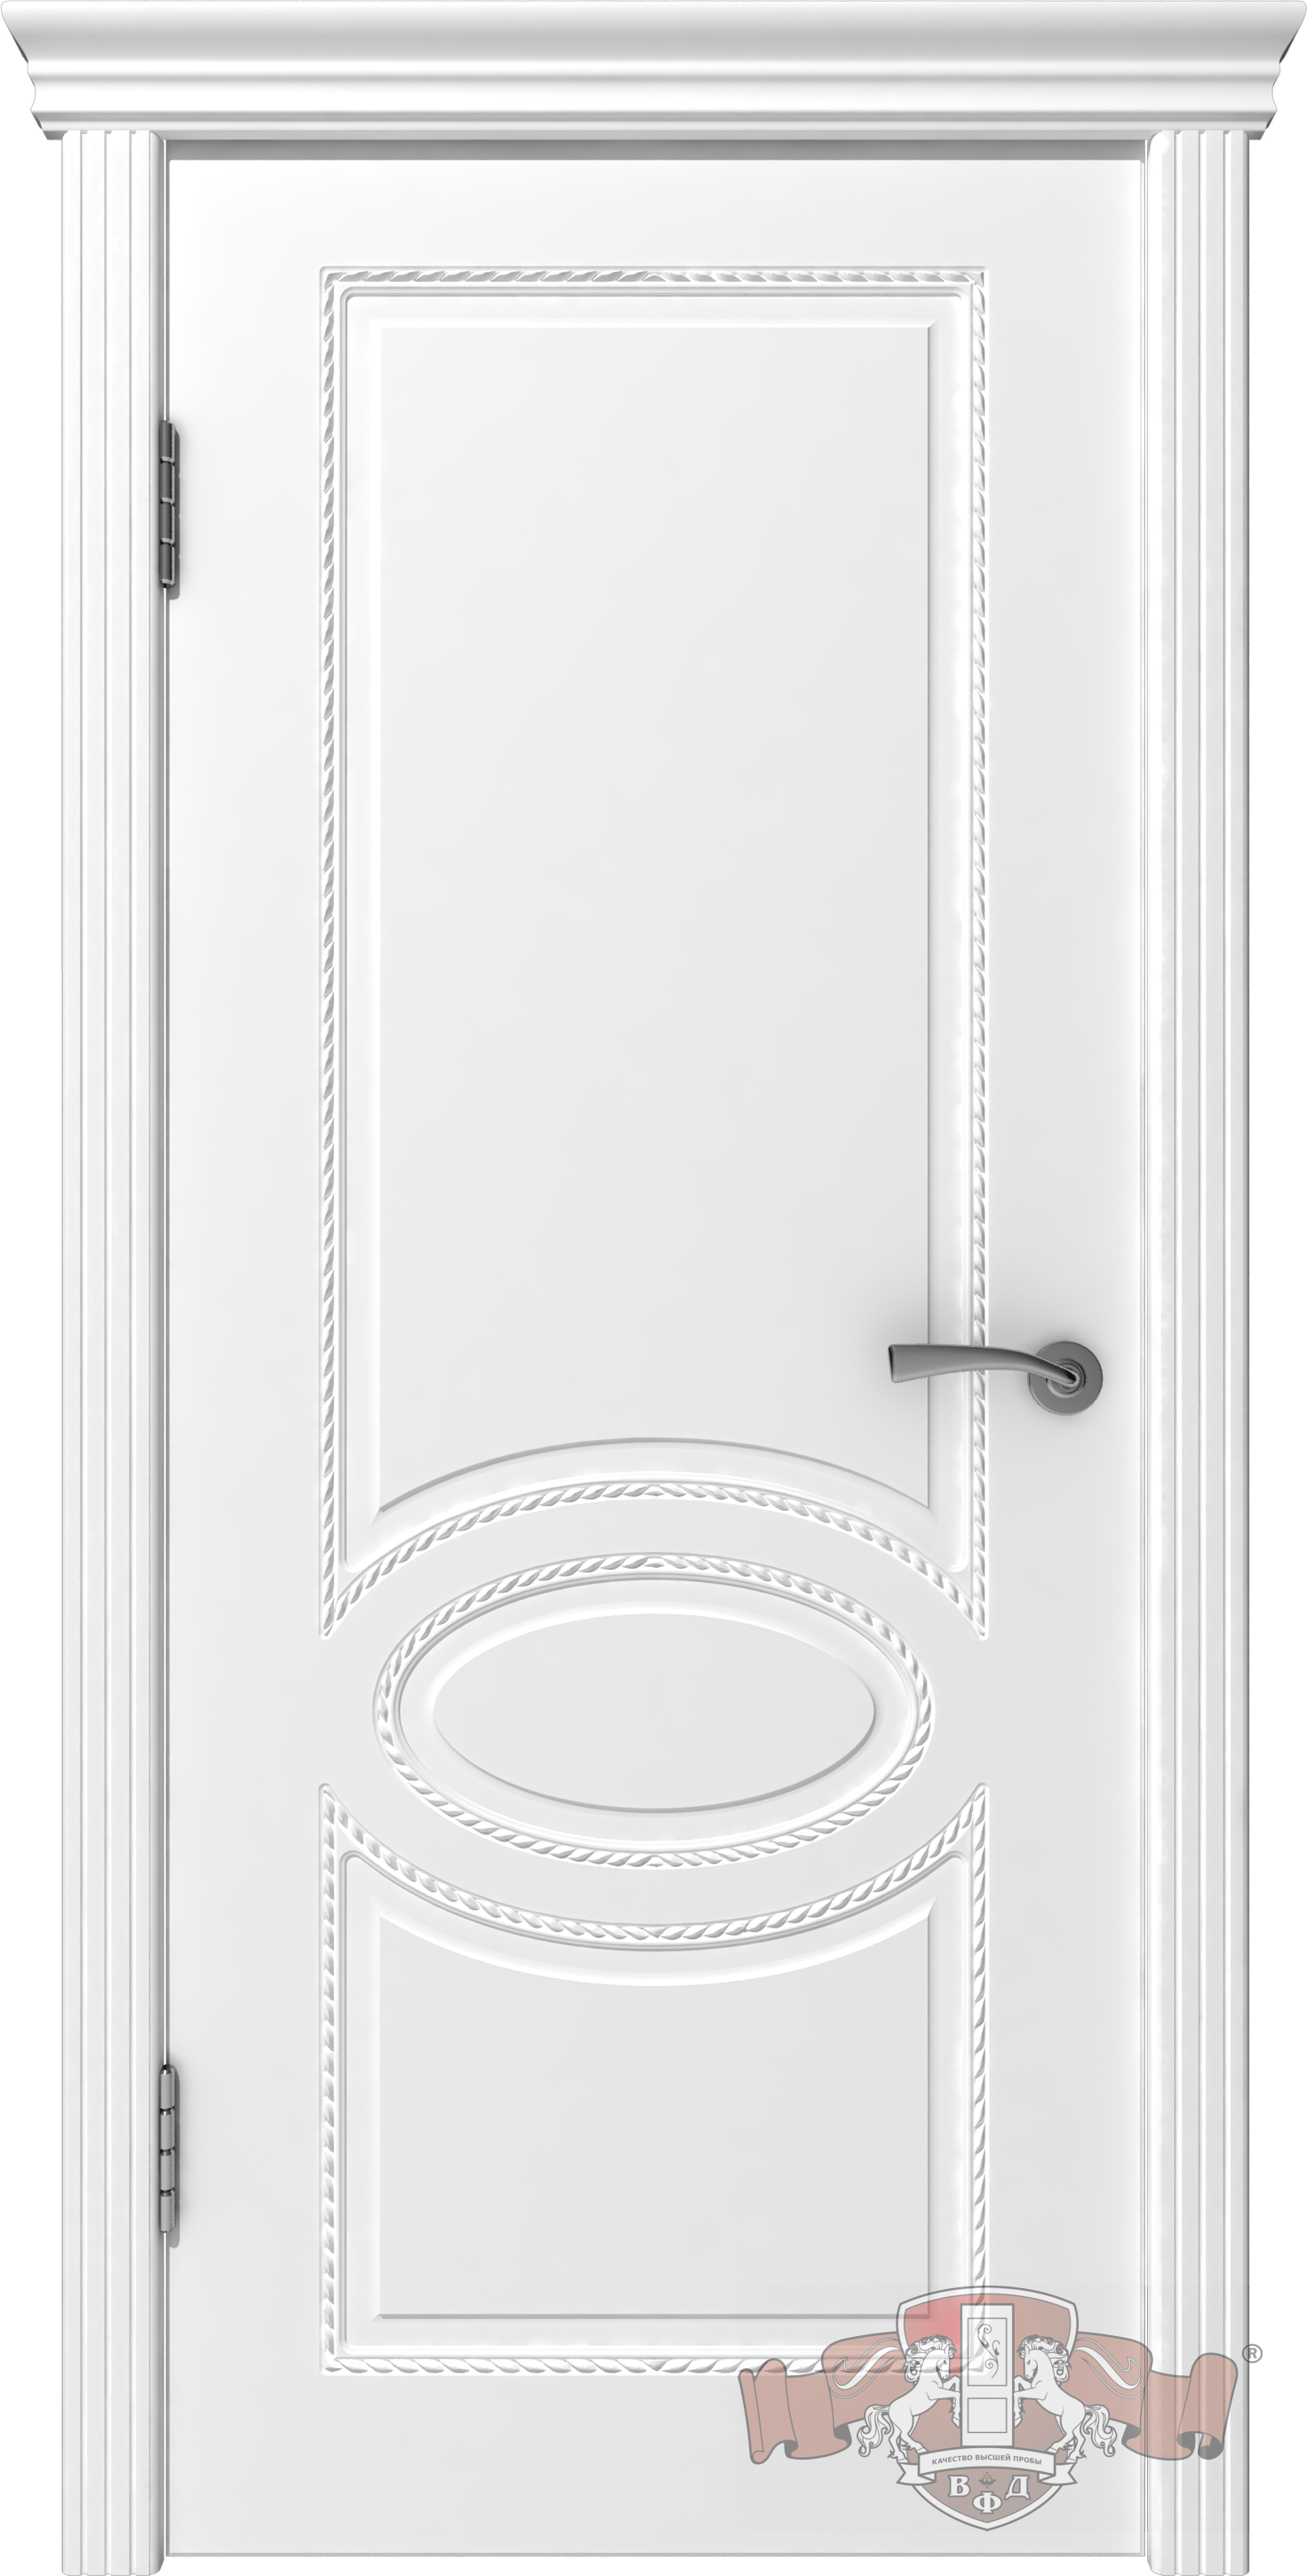 Модель дверей 29ДГ0, белый, шпоновые. ВФД - Поразительное количество предложений элементов витражей, колеровки - Эффектный подбор по фото.